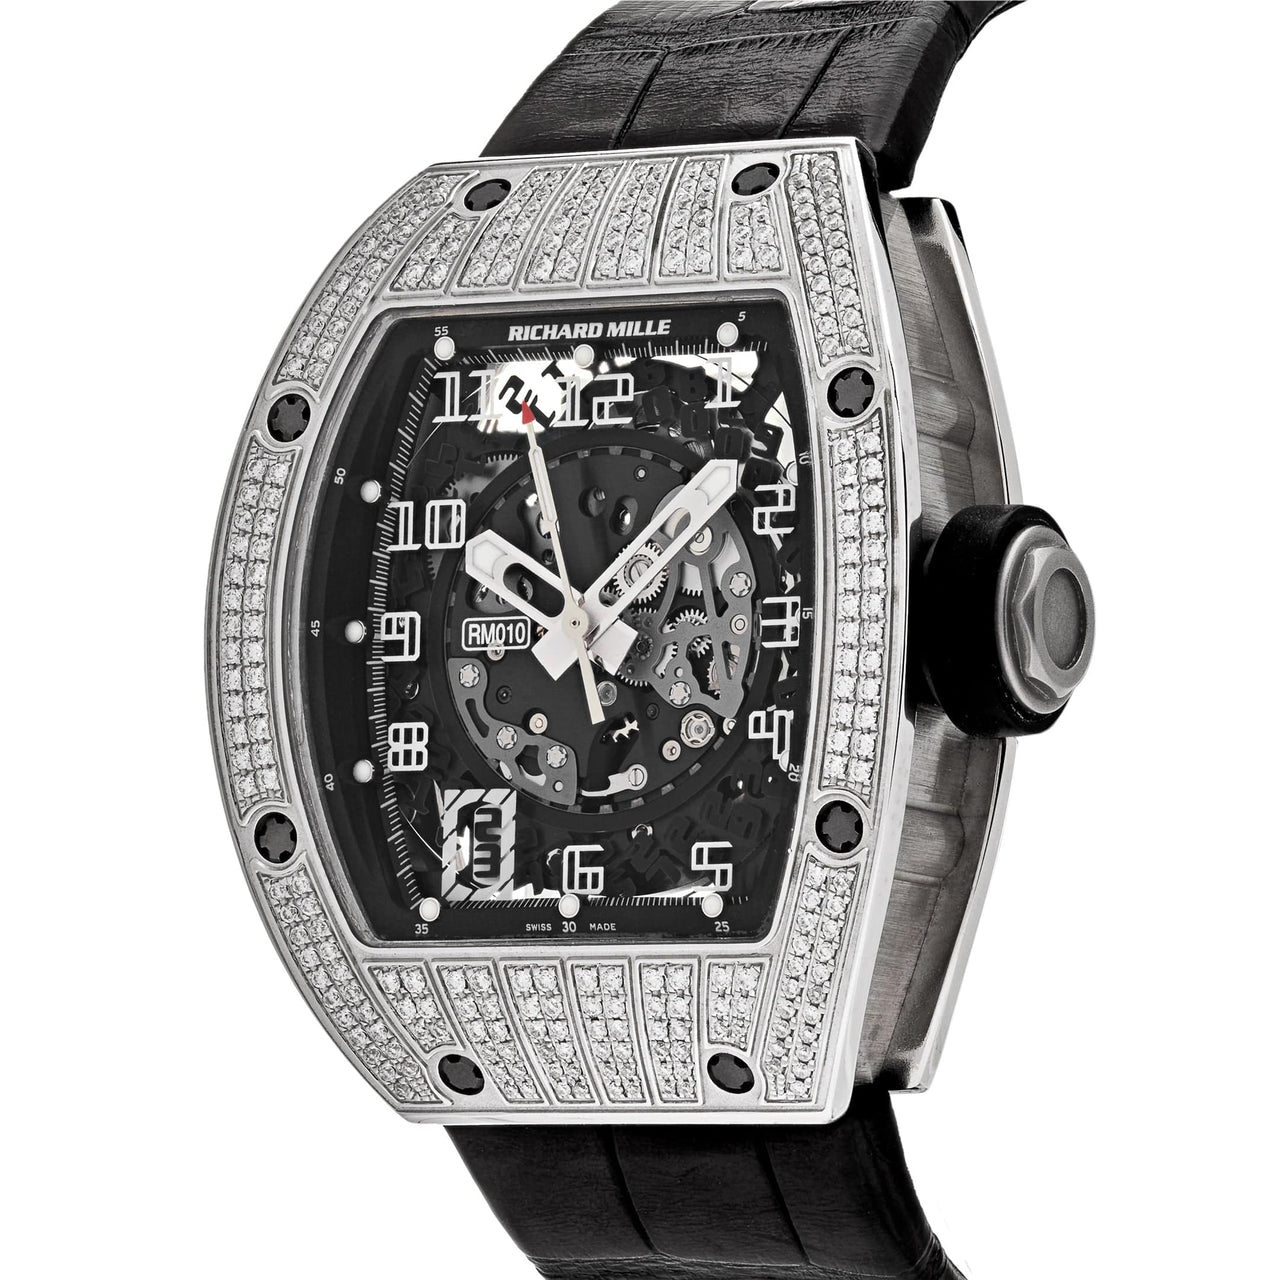 Luxury Watch Richard Mille White Gold Diamond Set RM010 Wrist Aficionado